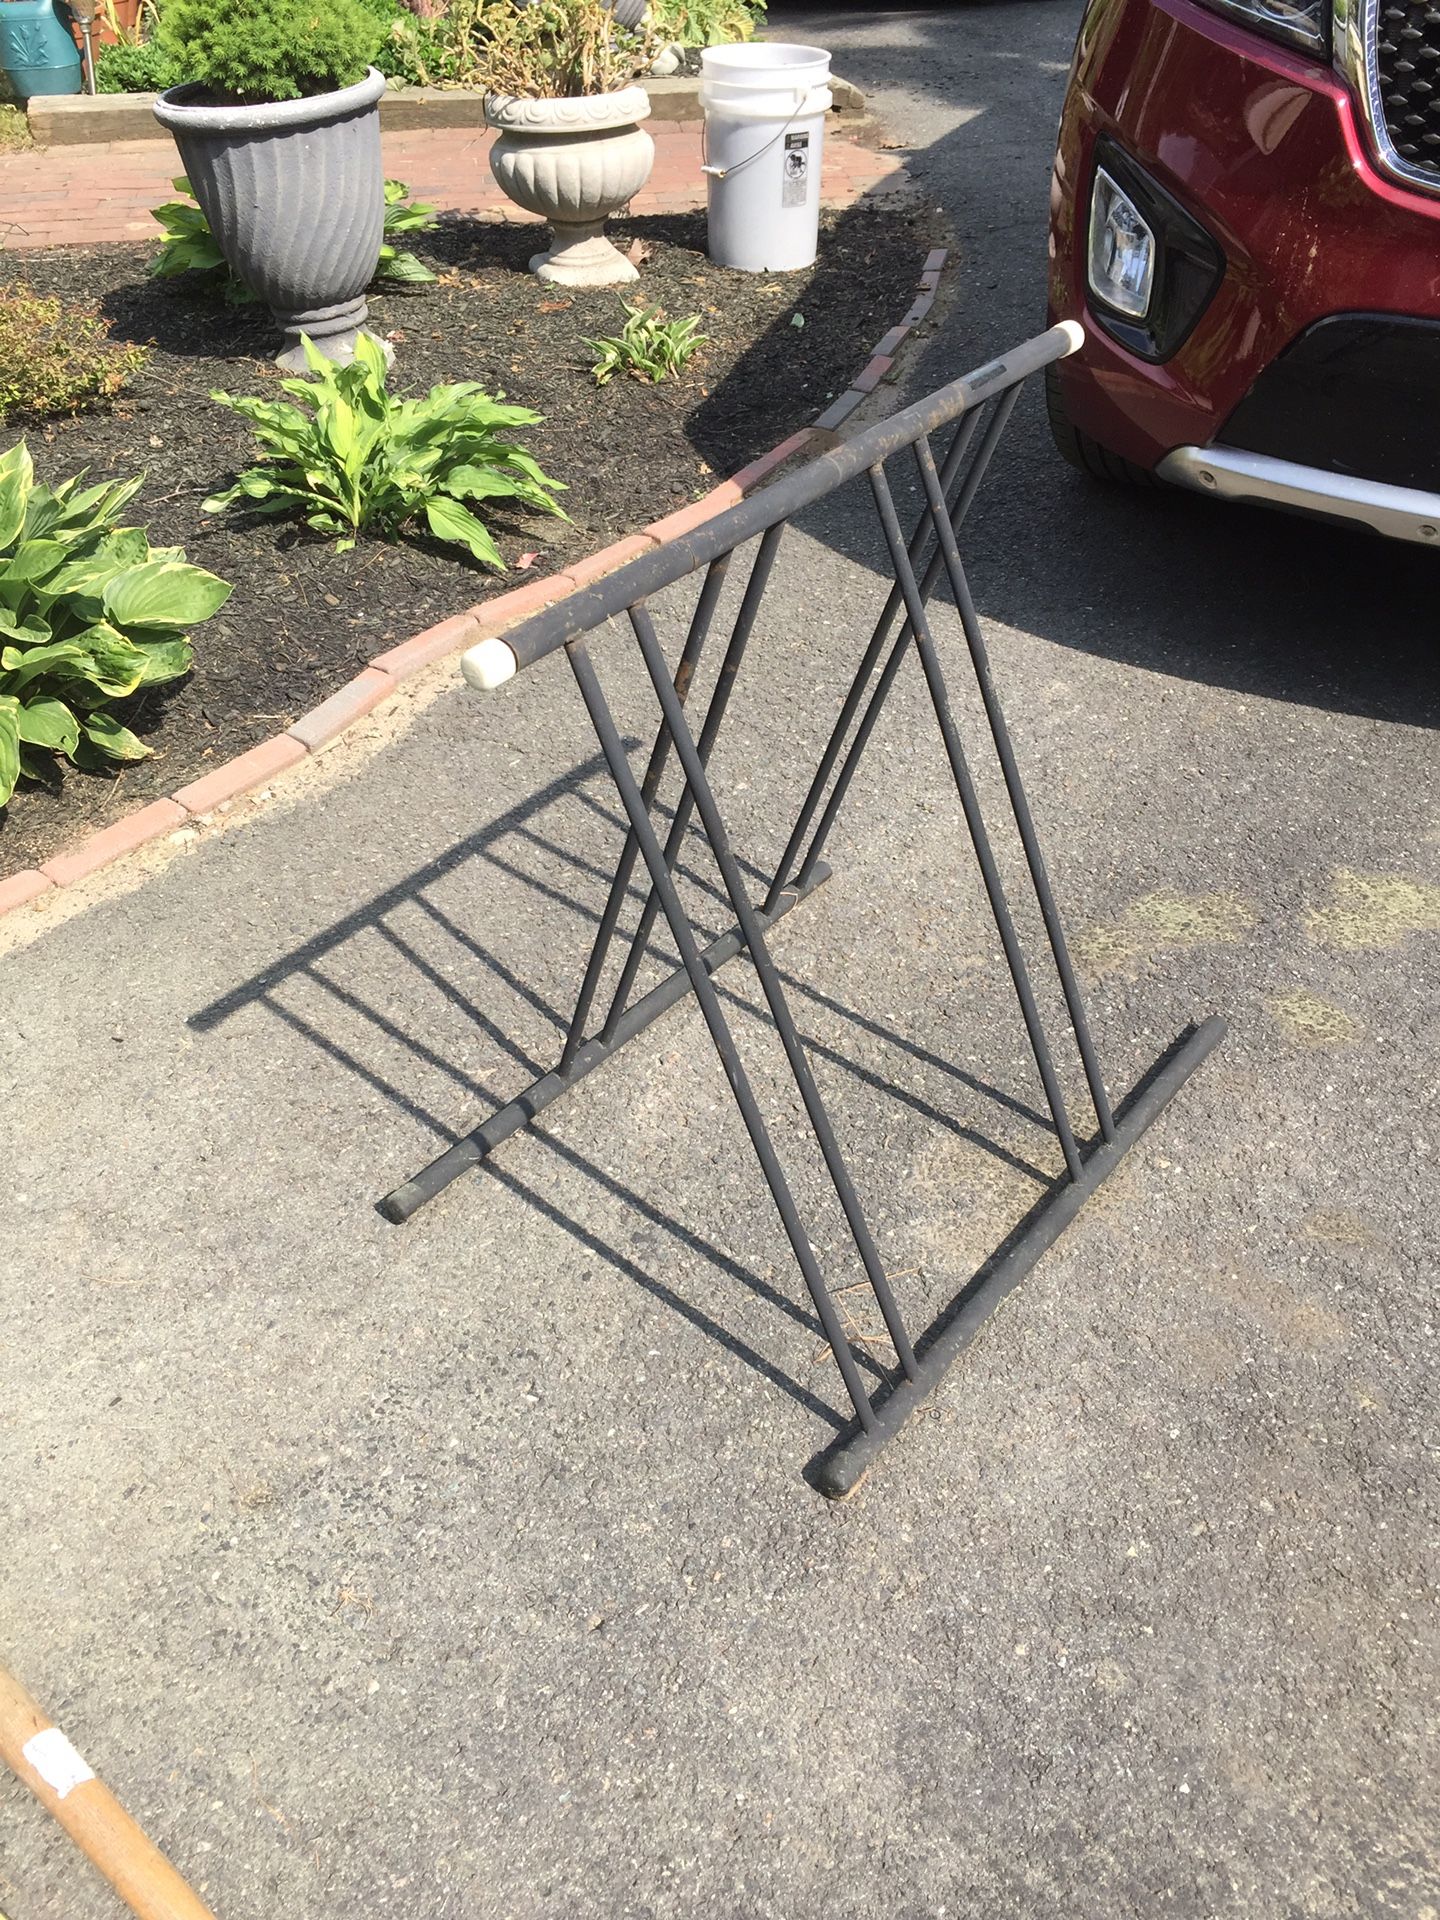 Folding bike rack